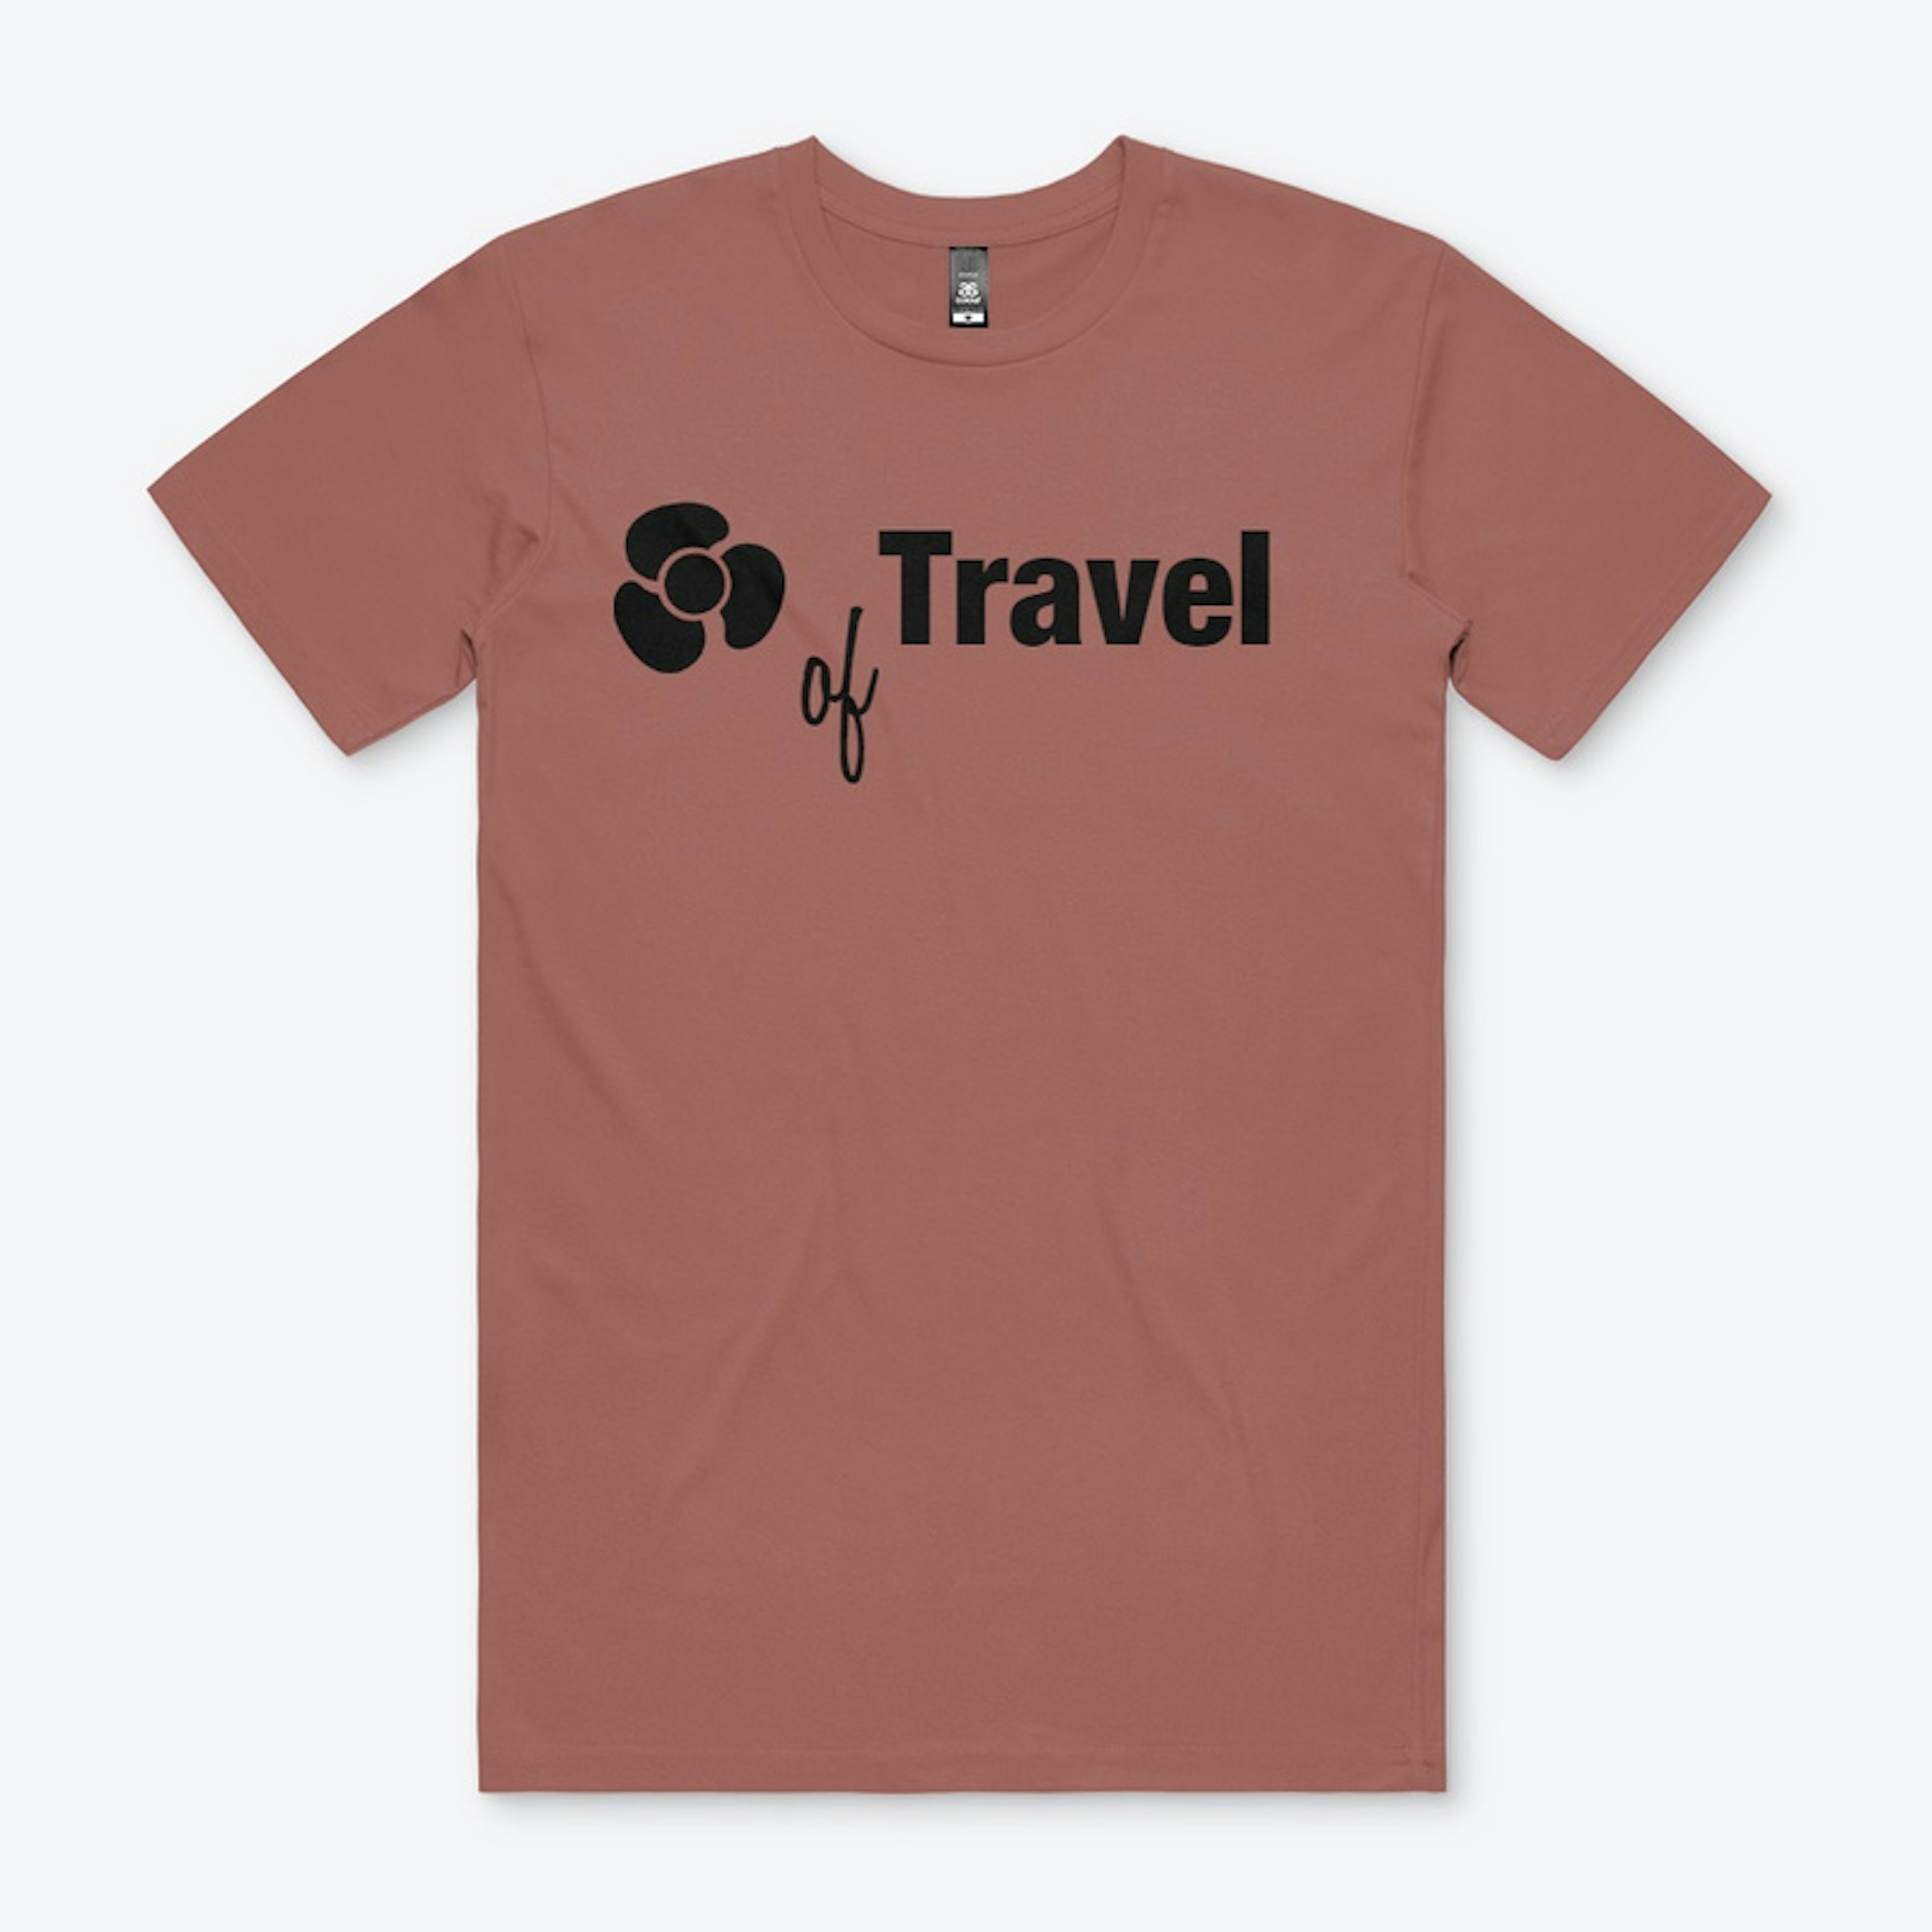 fan of travel